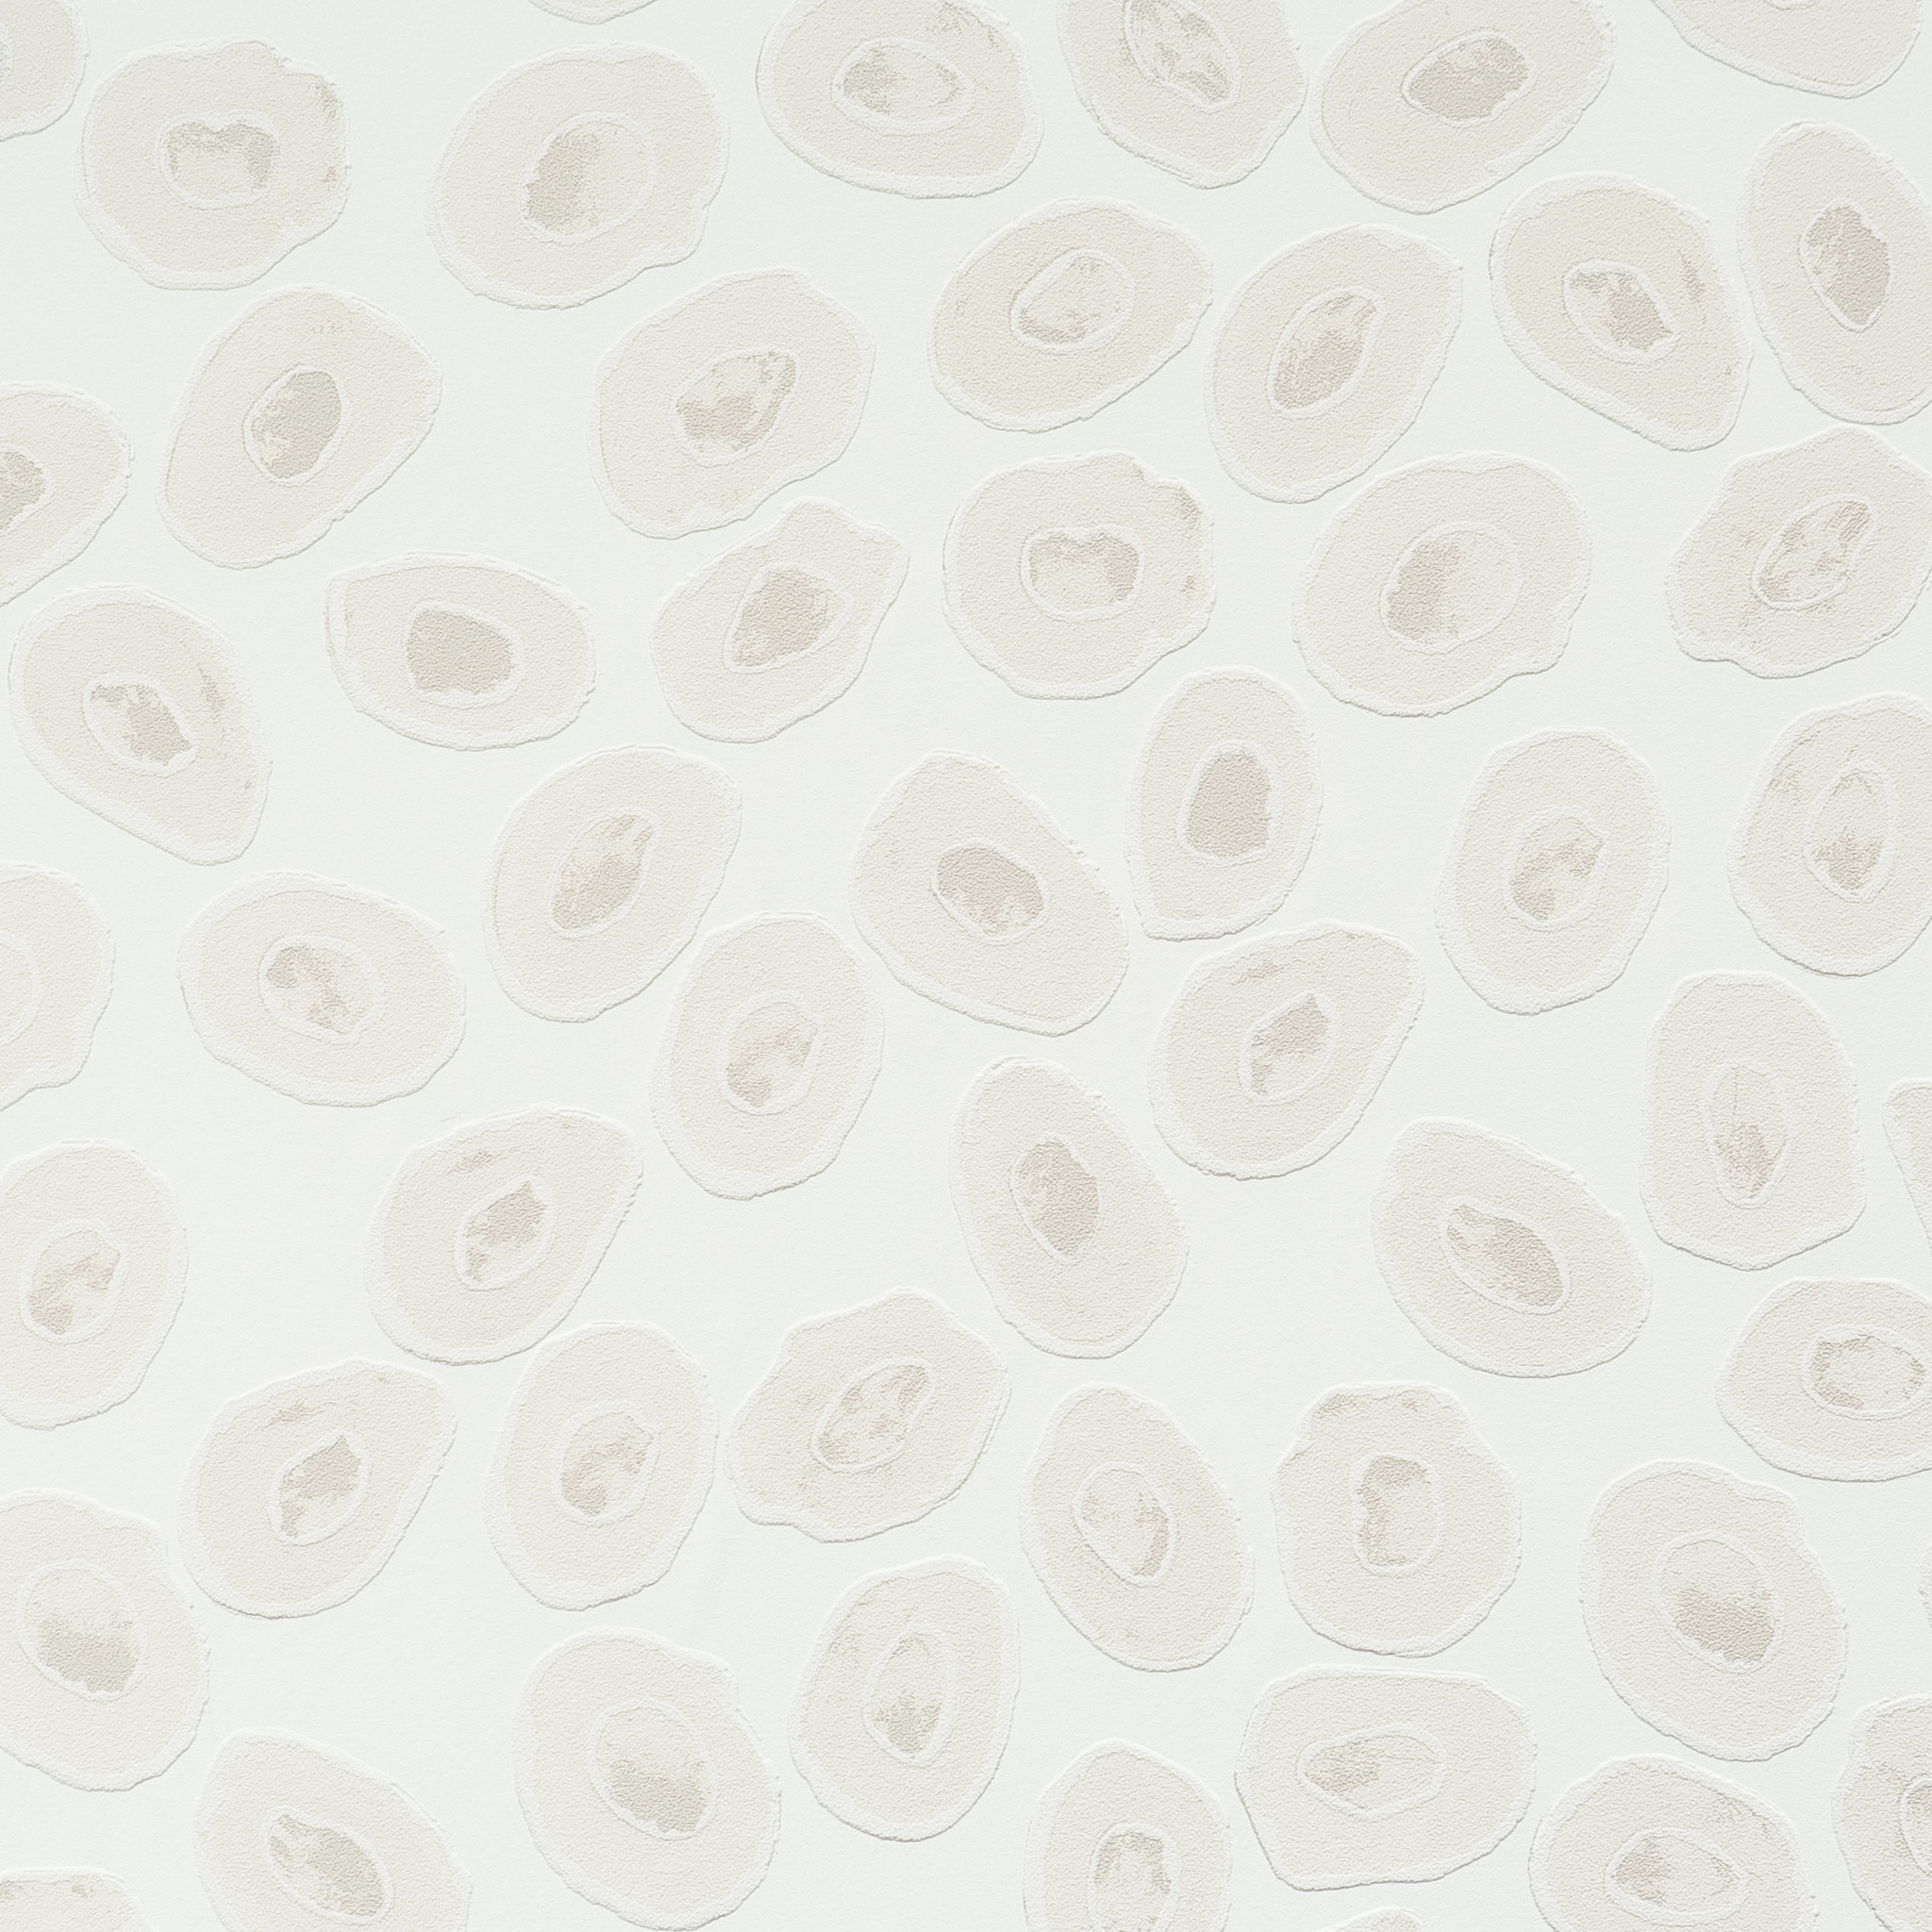 Polka Dot Patterned Wallpaper for Modern Home & Office | BURKE DECOR